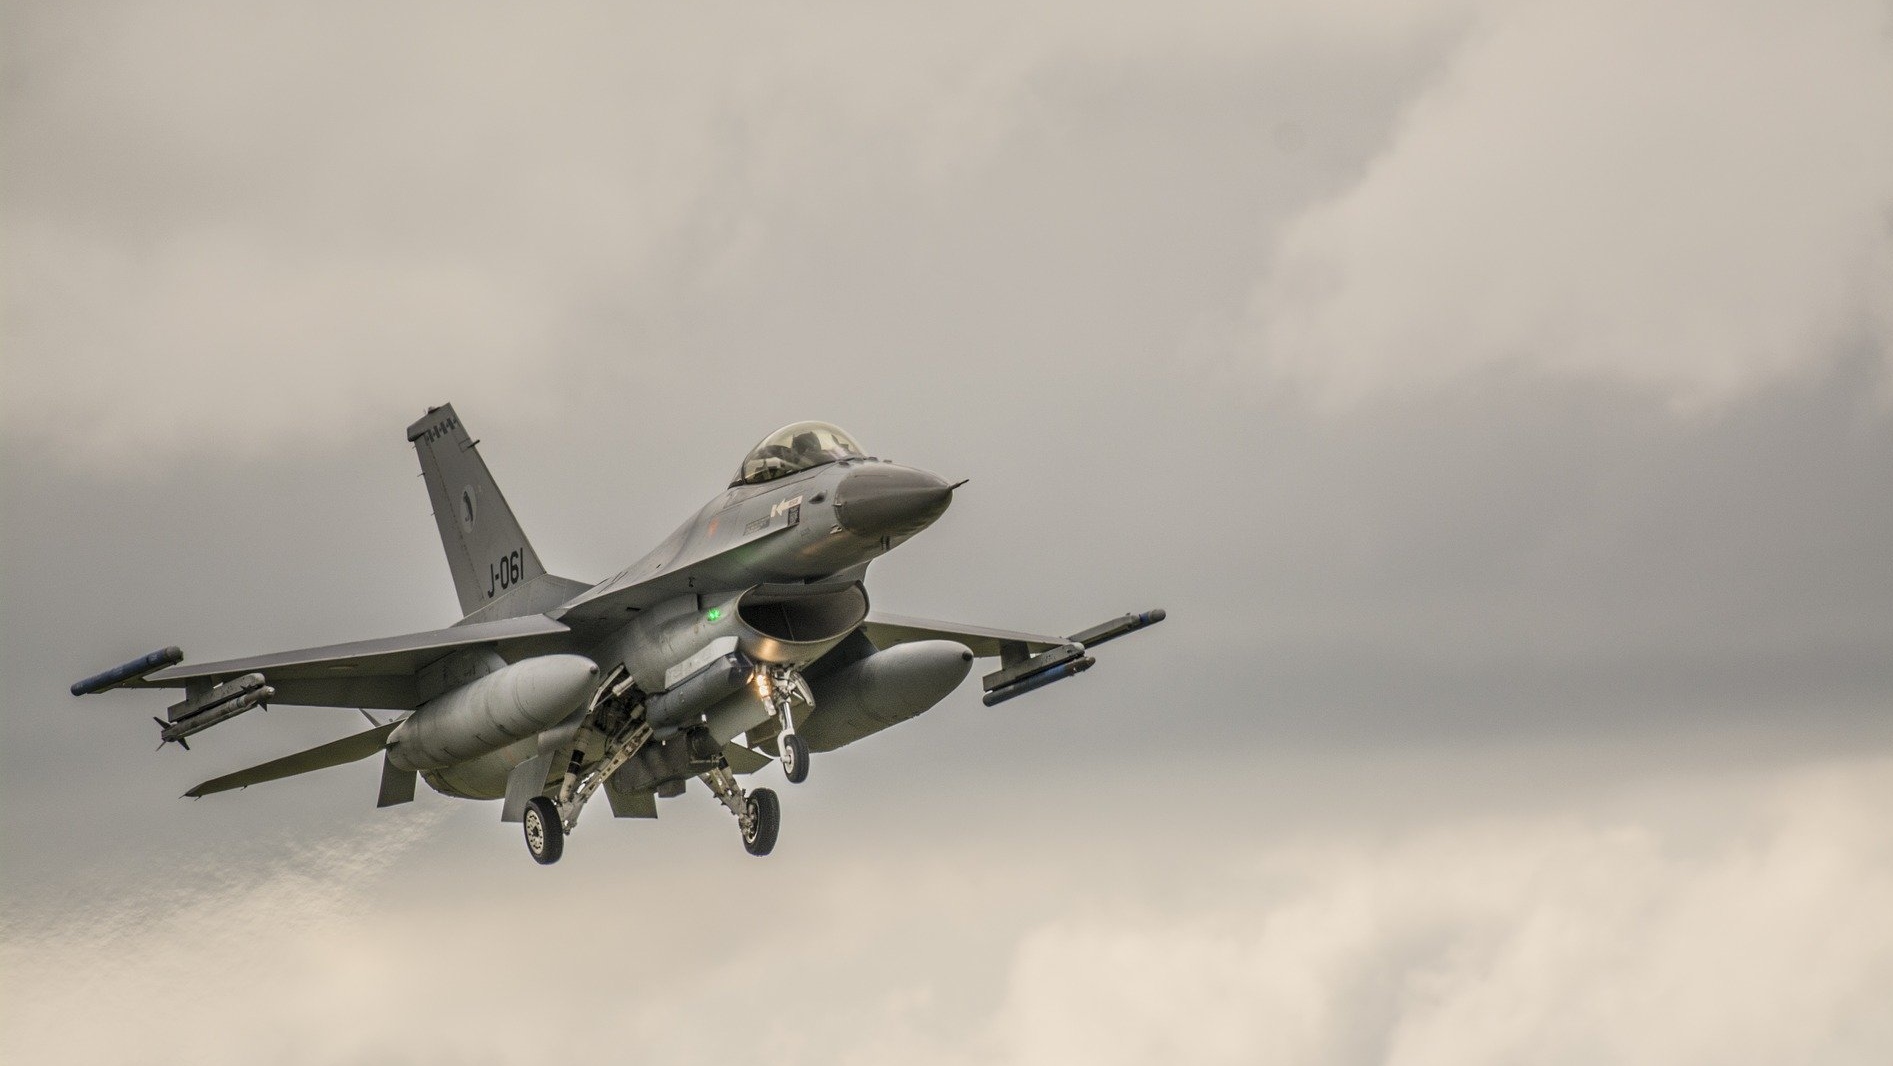 Тайваньский истребитель F-16 совершил жесткую посадку на Гавайях